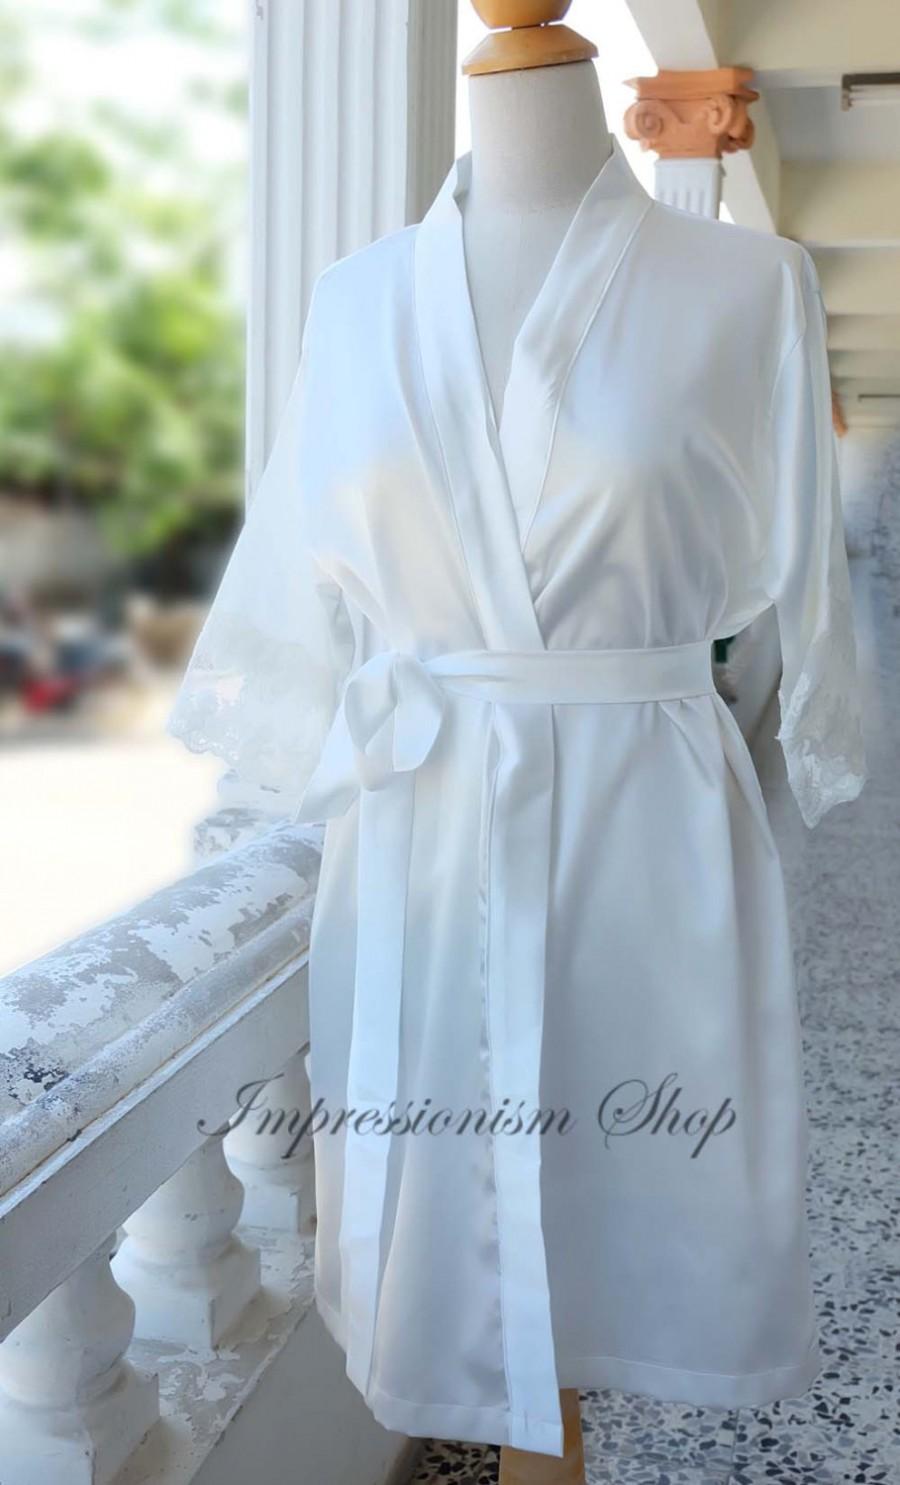 زفاف - White Ivory Satin Lace Robe for Bride, Lingerie, Getting Ready, Bridal Gift, Bachelorette party Gift, Honeymoon, Lace Kimono, Wedding Gift